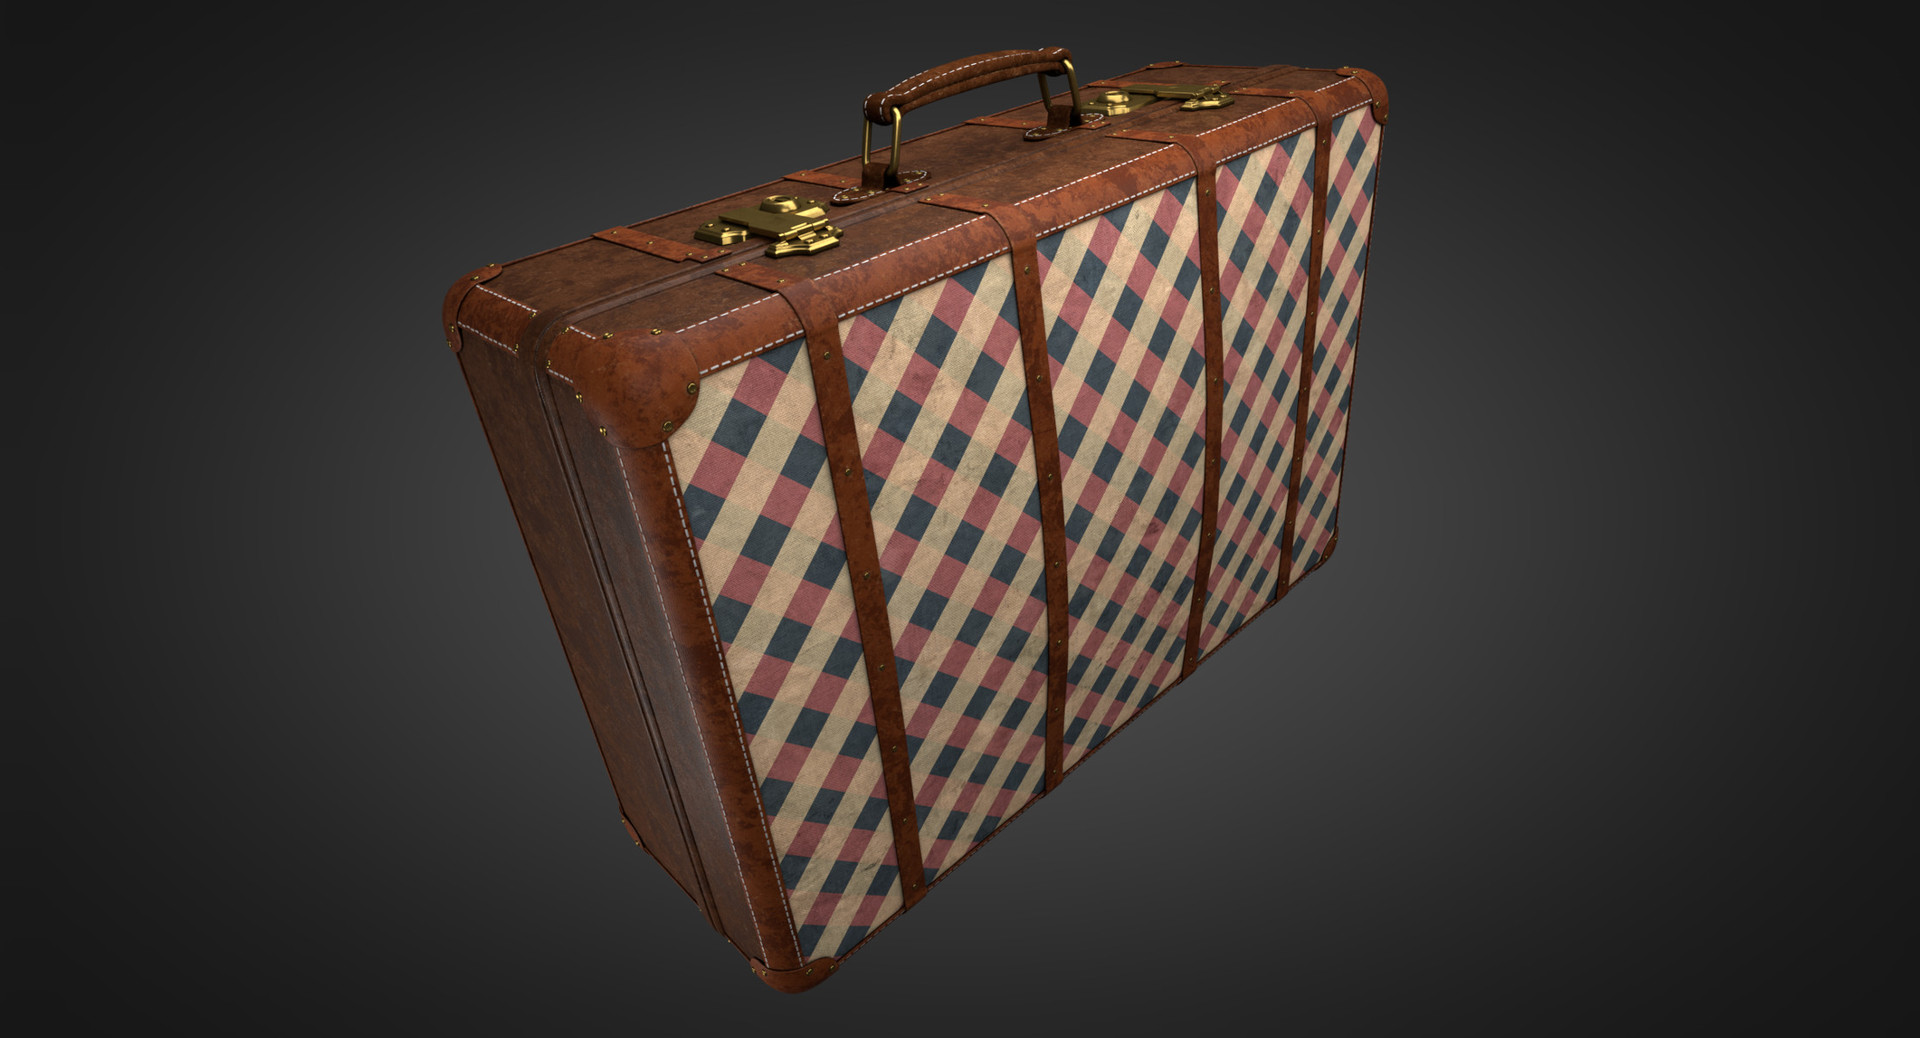 Vintage Suitcase Retro Valise | 3D model